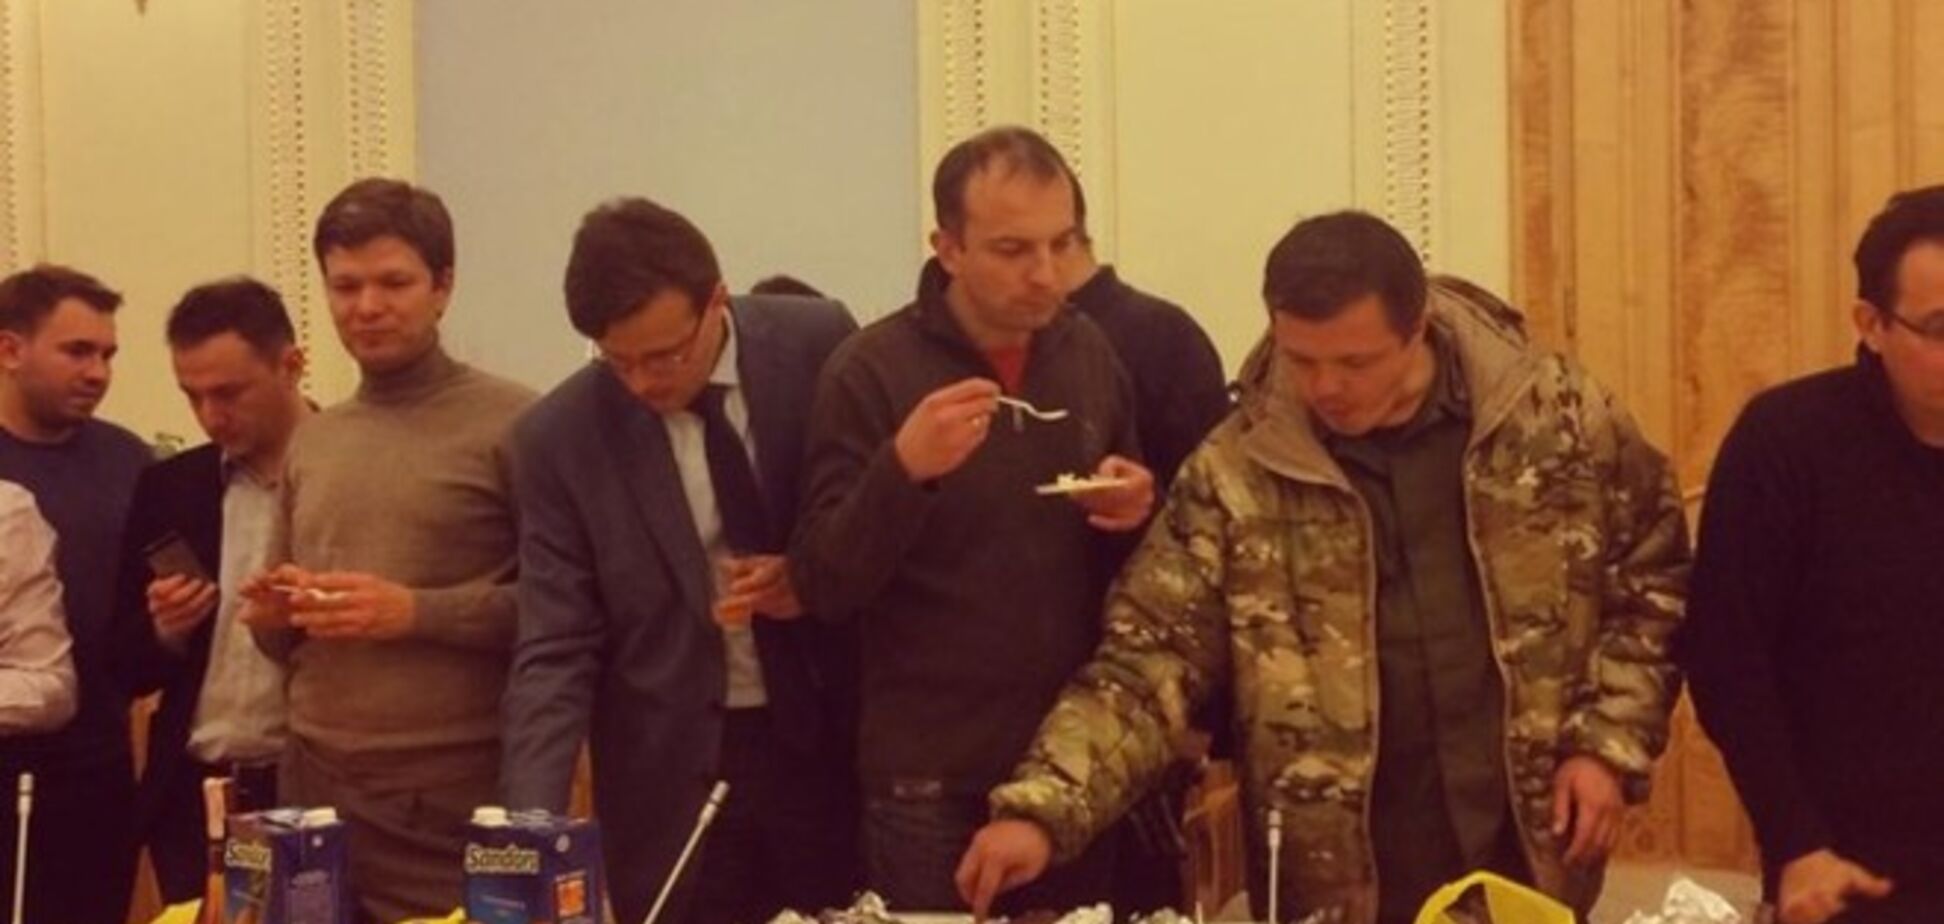 Після підписання коаліційної угоди представники партій їли з пластикового посуду і ділили вареники  